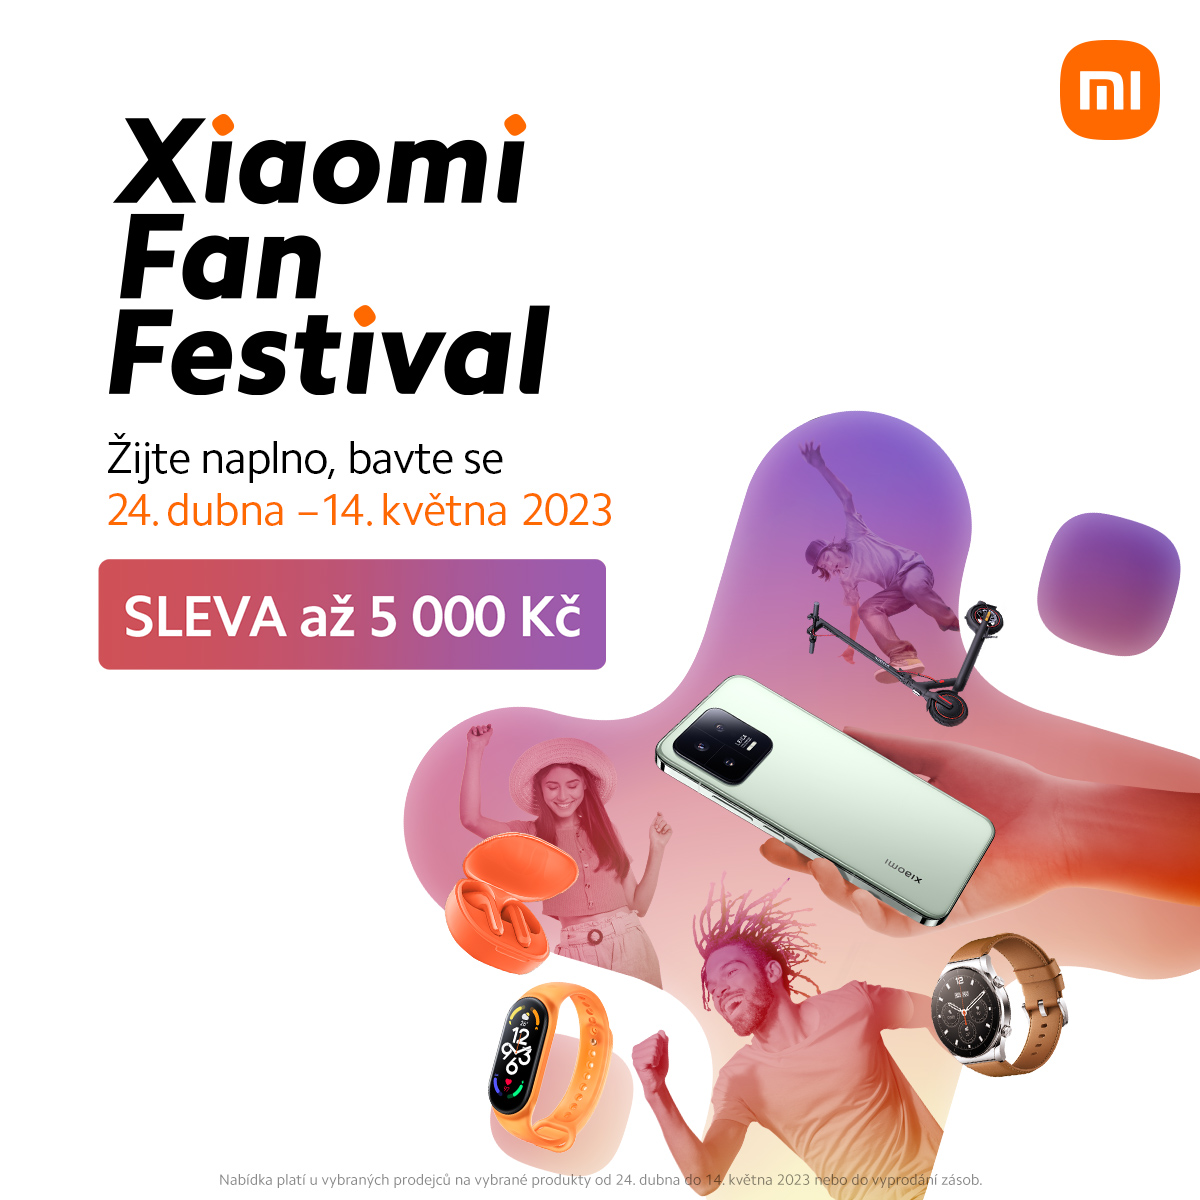 Xiaomi Fan Festival in